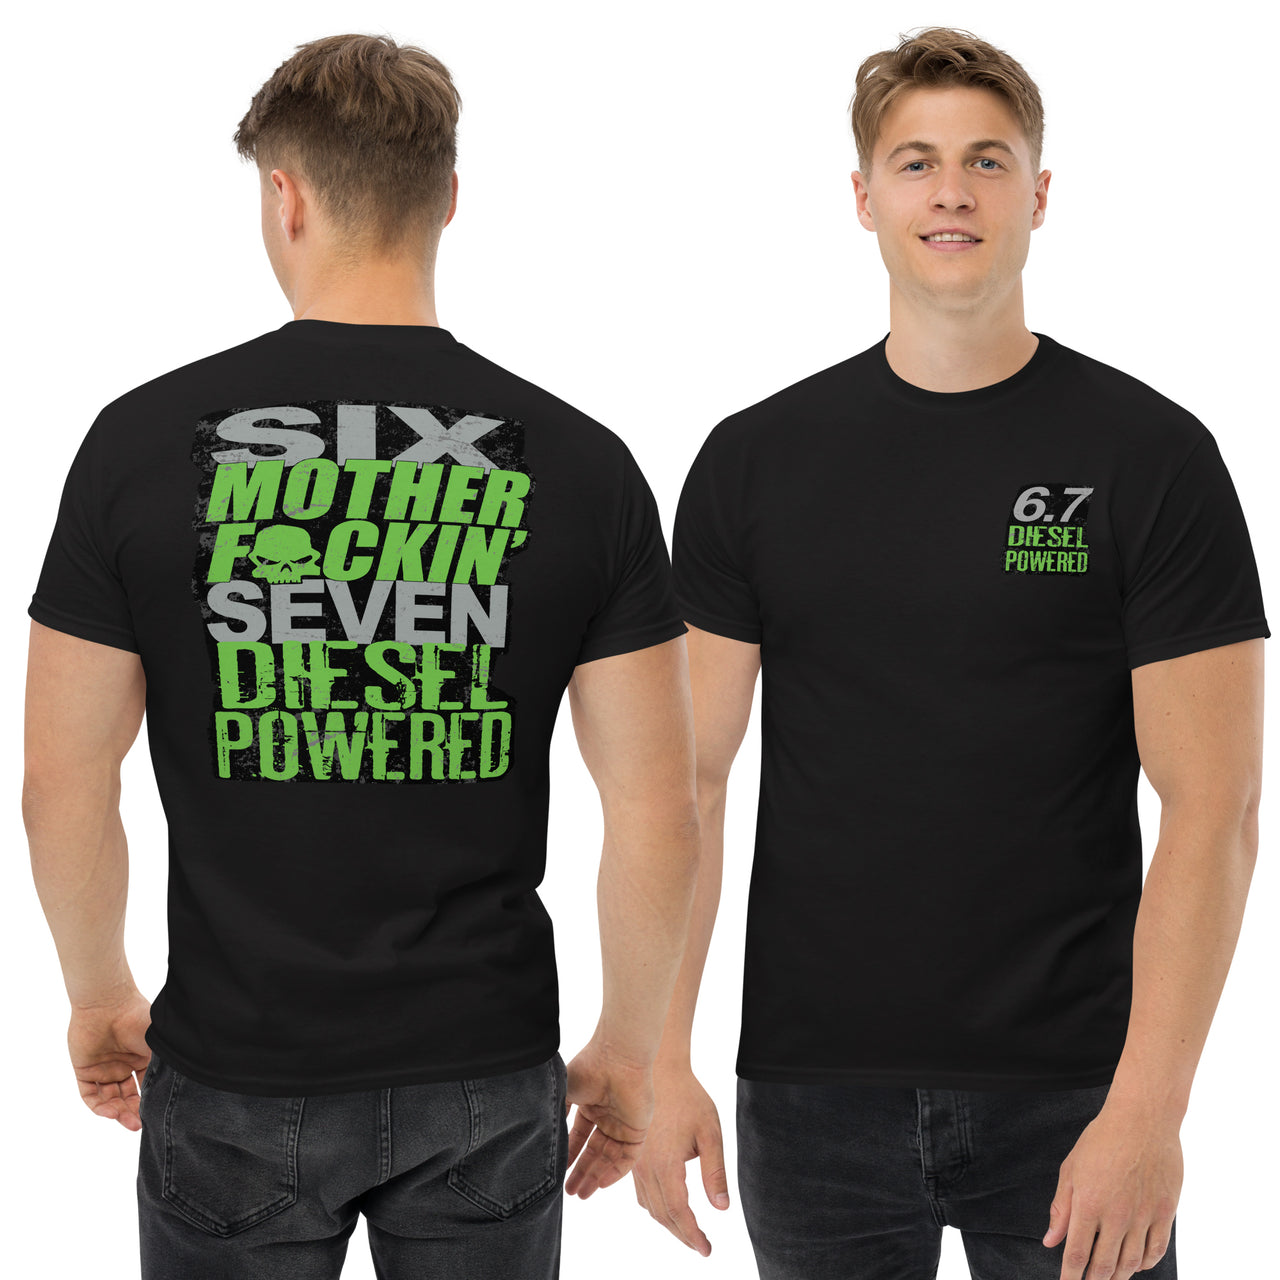 6.7 MF'N Diesel Engine T-Shirt modeled in black